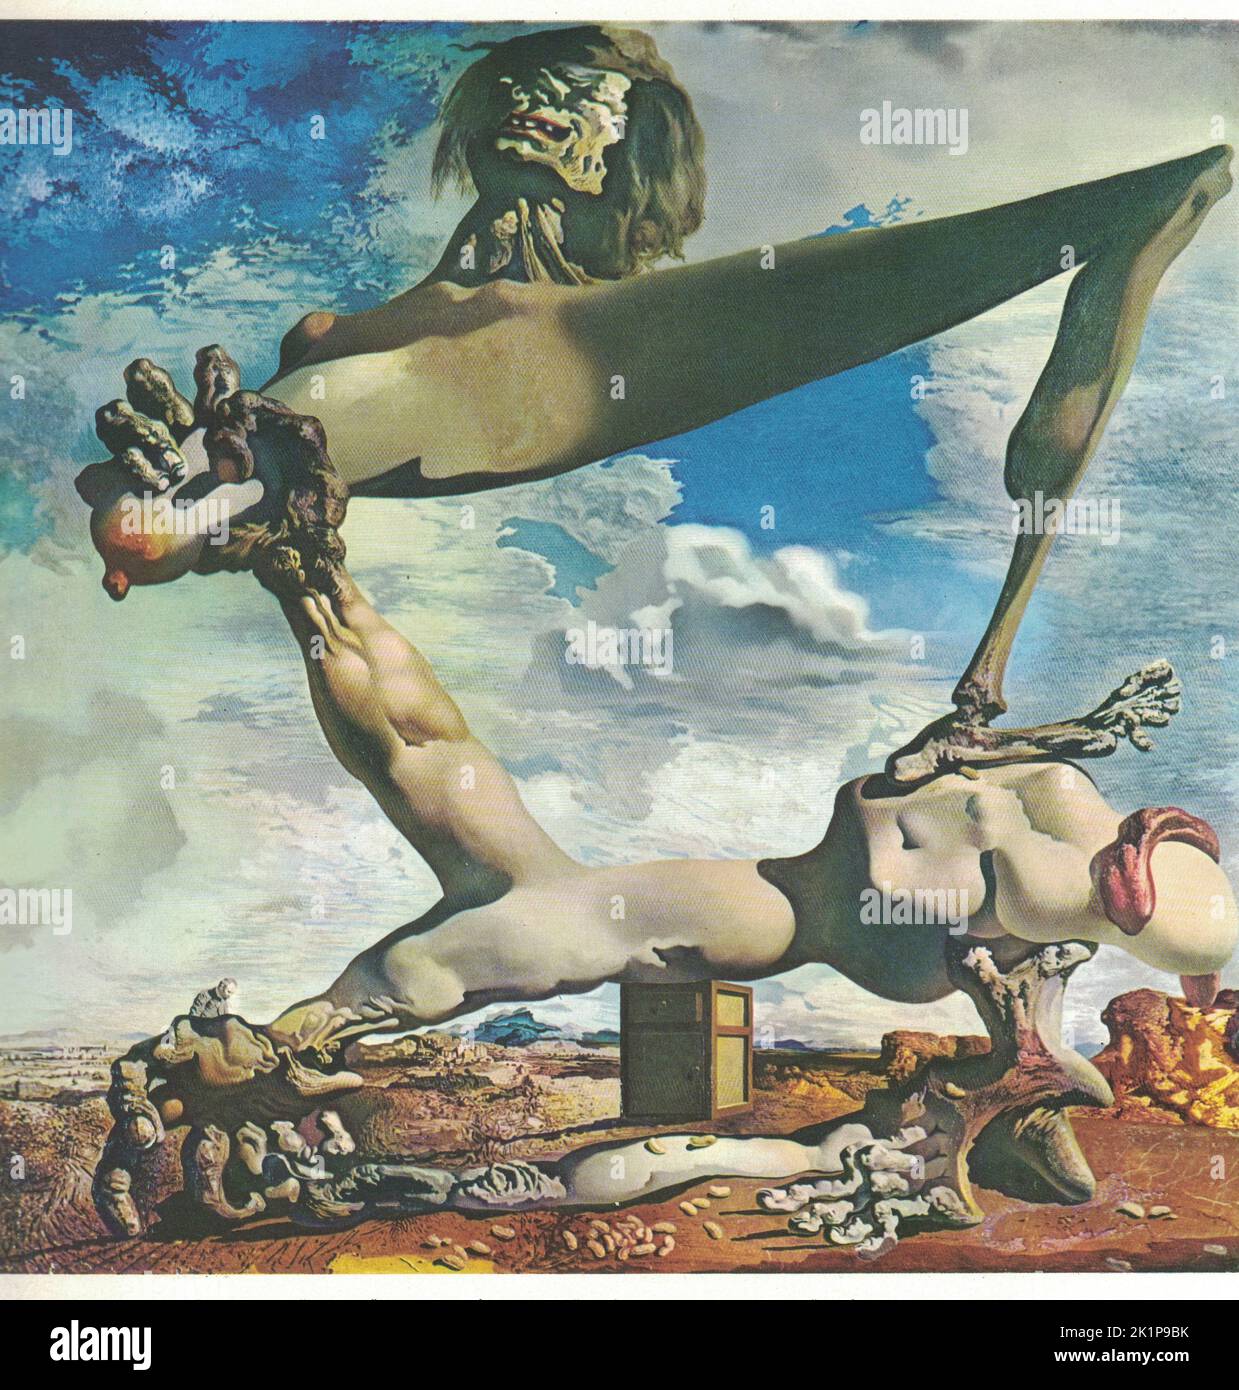 Premonizione della guerra civile (costruzione morbida con fagioli bolliti), 1936, olio su tela. Pittura di Salvador Dali. Salvador Dalí (11 maggio 1904 – 23 gennaio 1989) è stato un . Nato a Figueres, in Catalogna, Spagna, Dalí ha ricevuto la sua formazione formale in belle arti a Madrid. Influenzato dall'impressionismo e dai maestri rinascimentali fin da giovane, divenne sempre più attratto dal cubismo e dai movimenti d'avanguardia. Si avvicinò al Surrealismo alla fine degli anni '1920s e si unì al sur Foto Stock